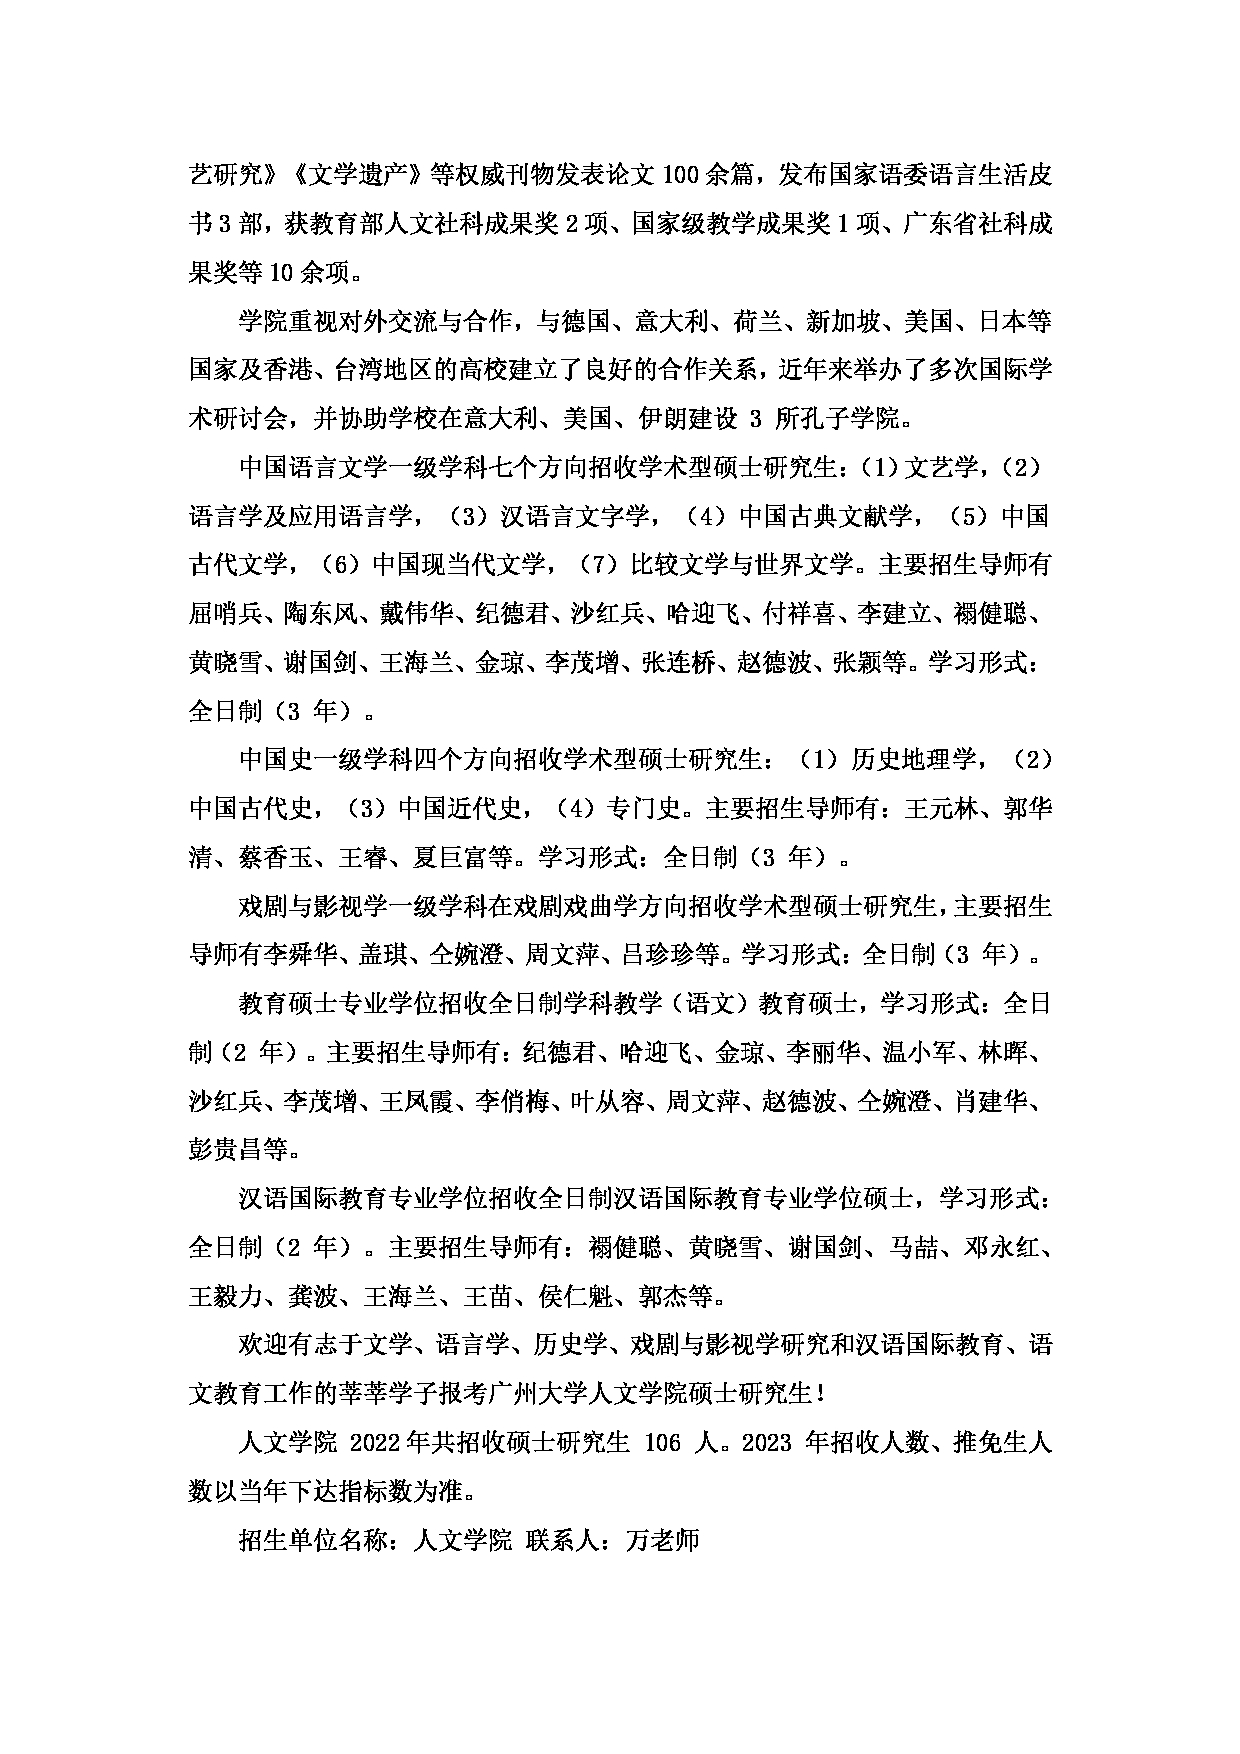 2023招生目录：广州大学2023年  6人文学院 研究生考试招生目录第2页